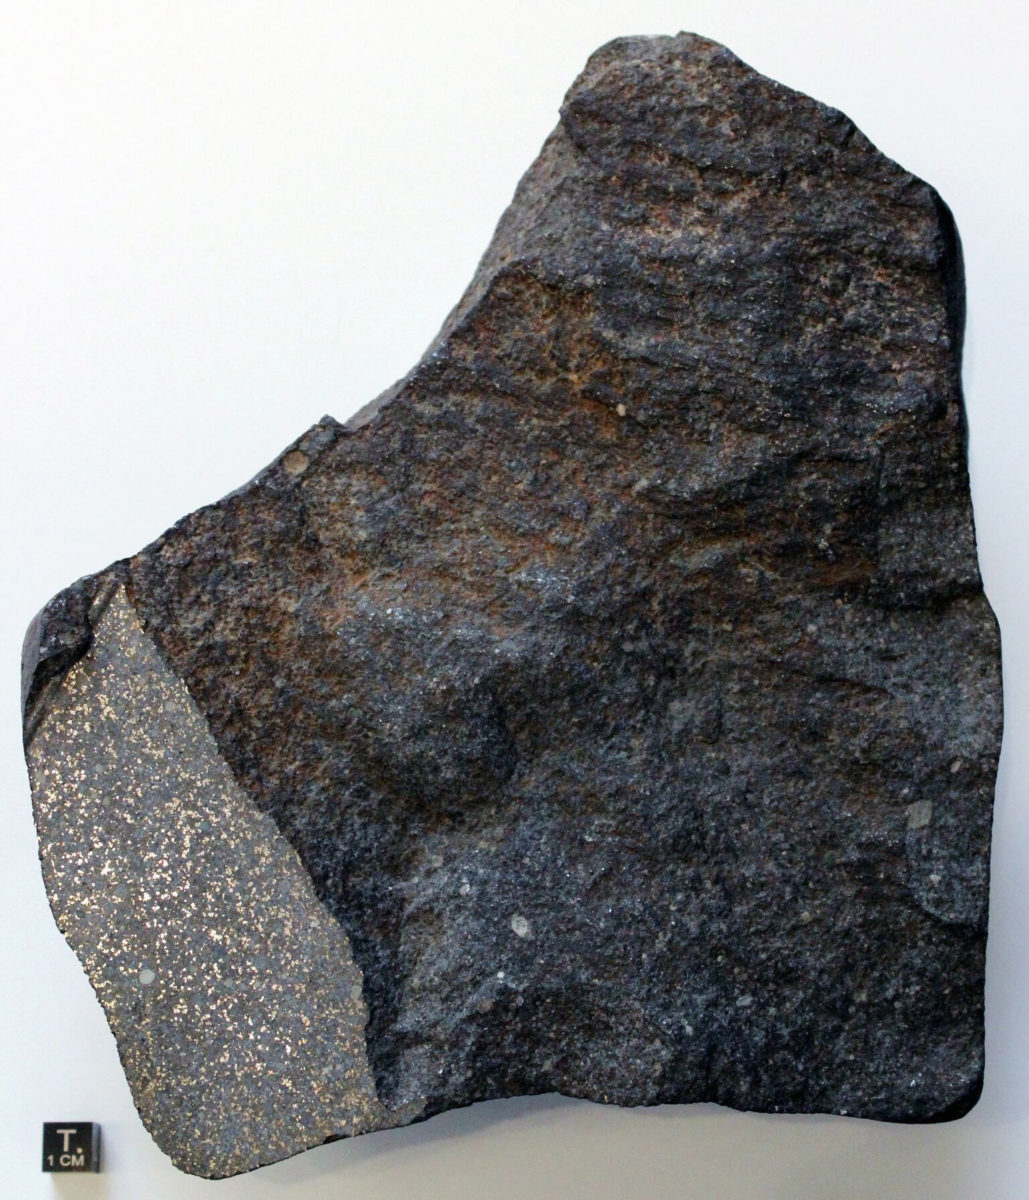 Ο Seres είναι ο μοναδικός μετεωρίτης που έχει ανακτηθεί μέχρι σήμερα από ελληνικό έδαφος (φωτ.: Ludovic Ferrière).